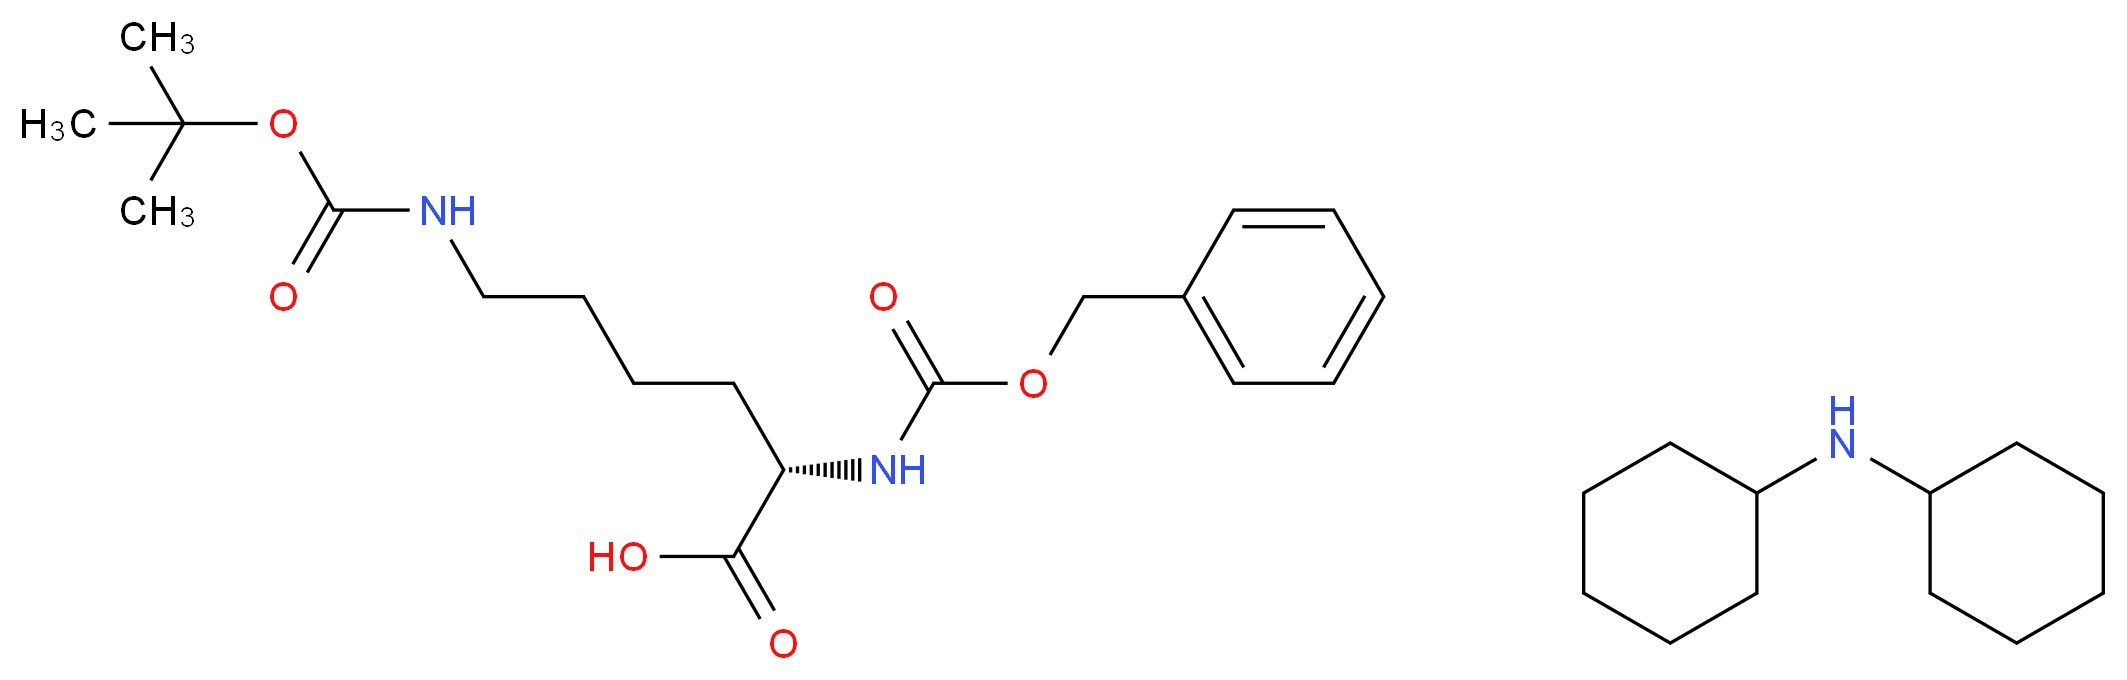 2212-76-2 molecular structure